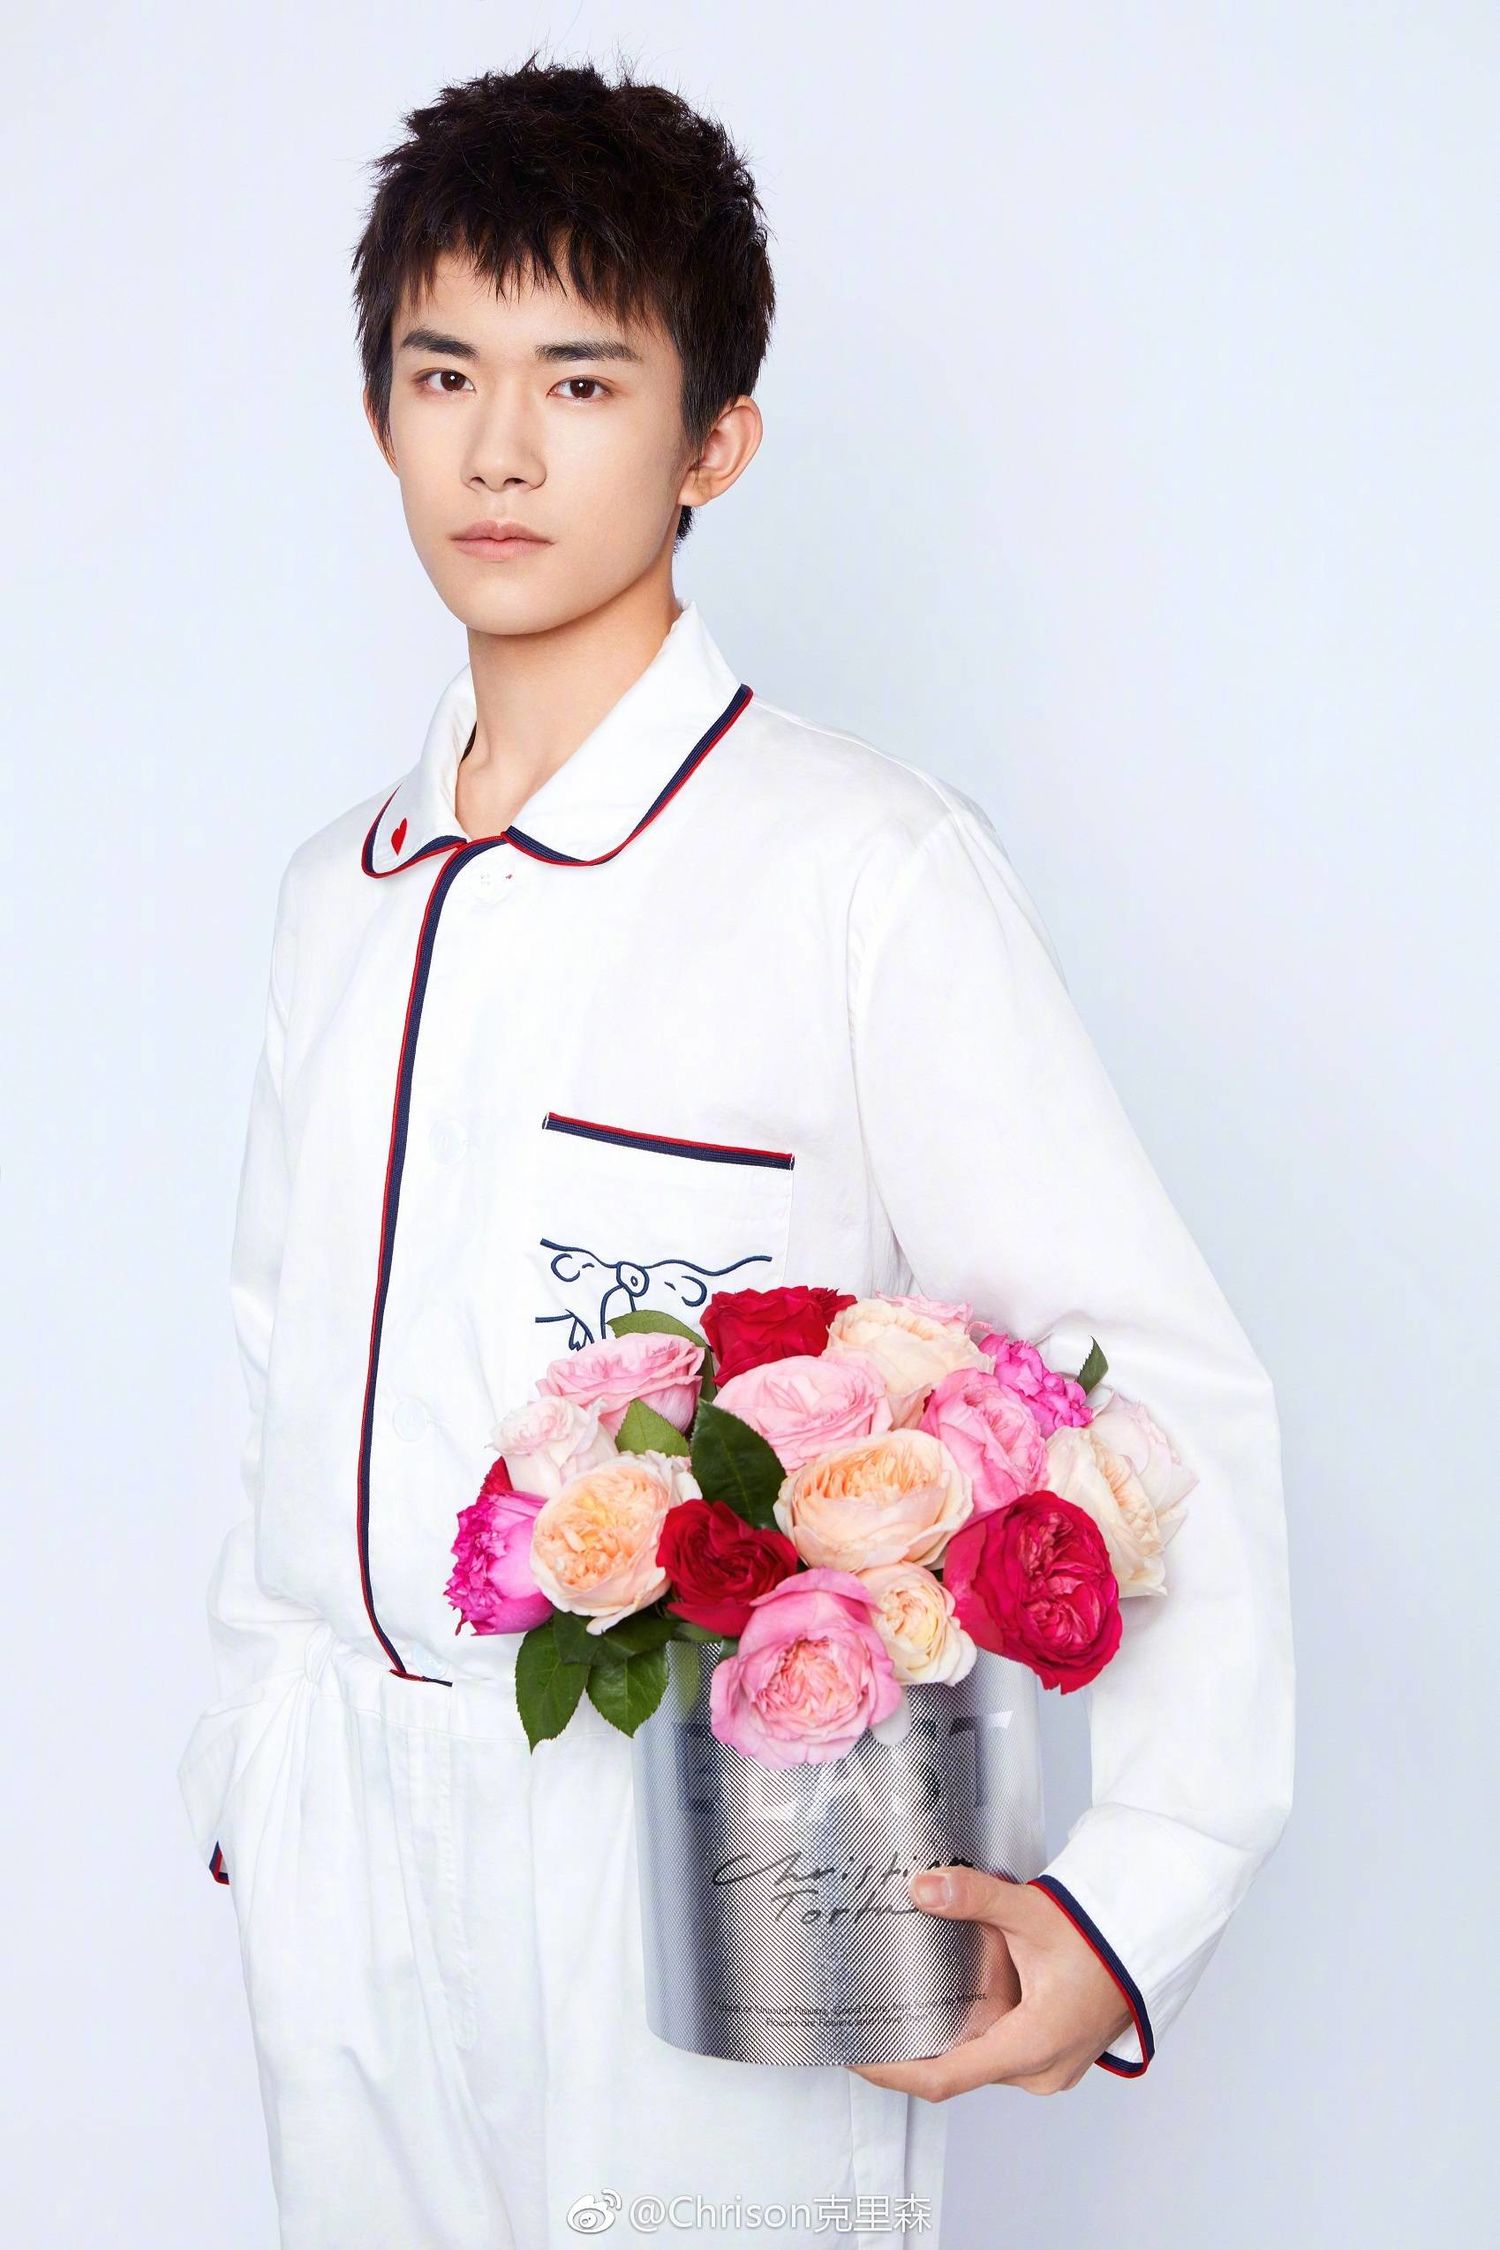 [易烊千玺[新闻]190123 小王子与玫瑰花的搭配 易烊千玺代言情人节